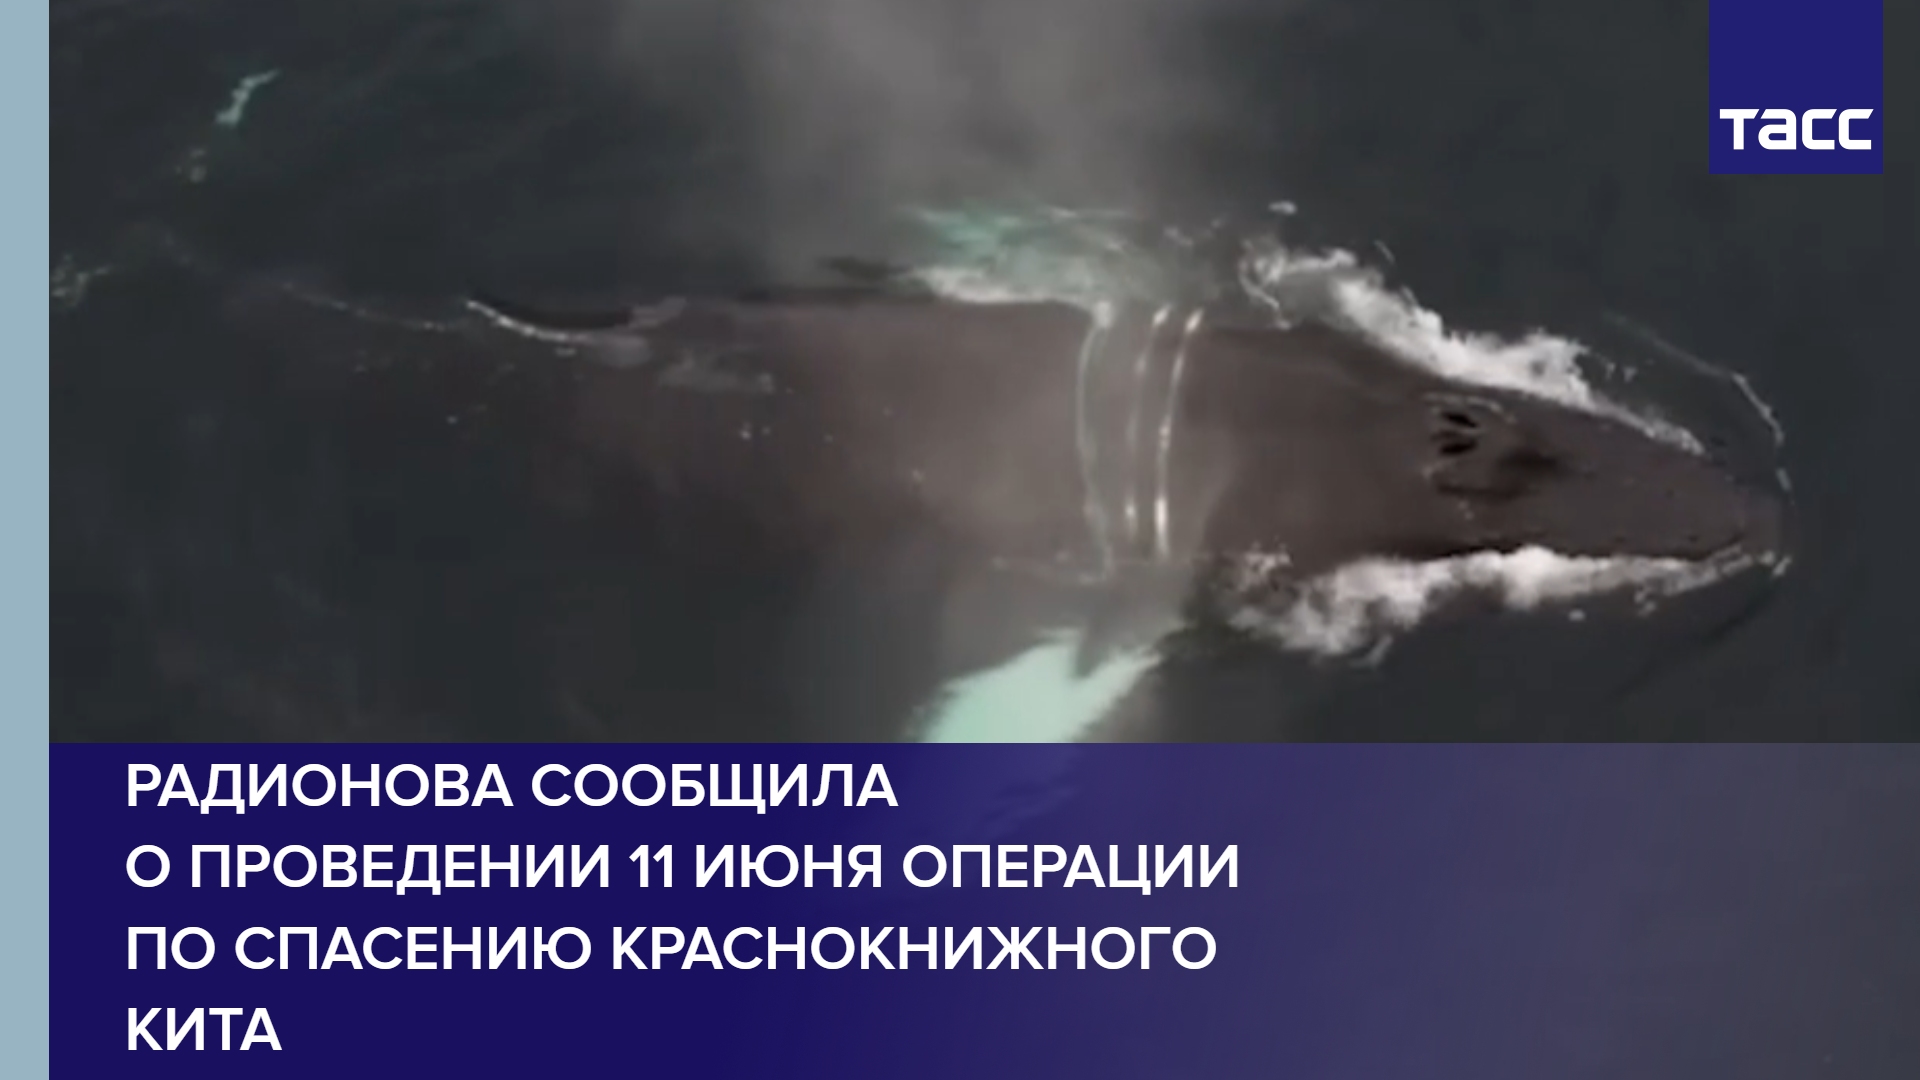 Радионова сообщила о проведении 11 июня операции по спасению краснокнижного кита